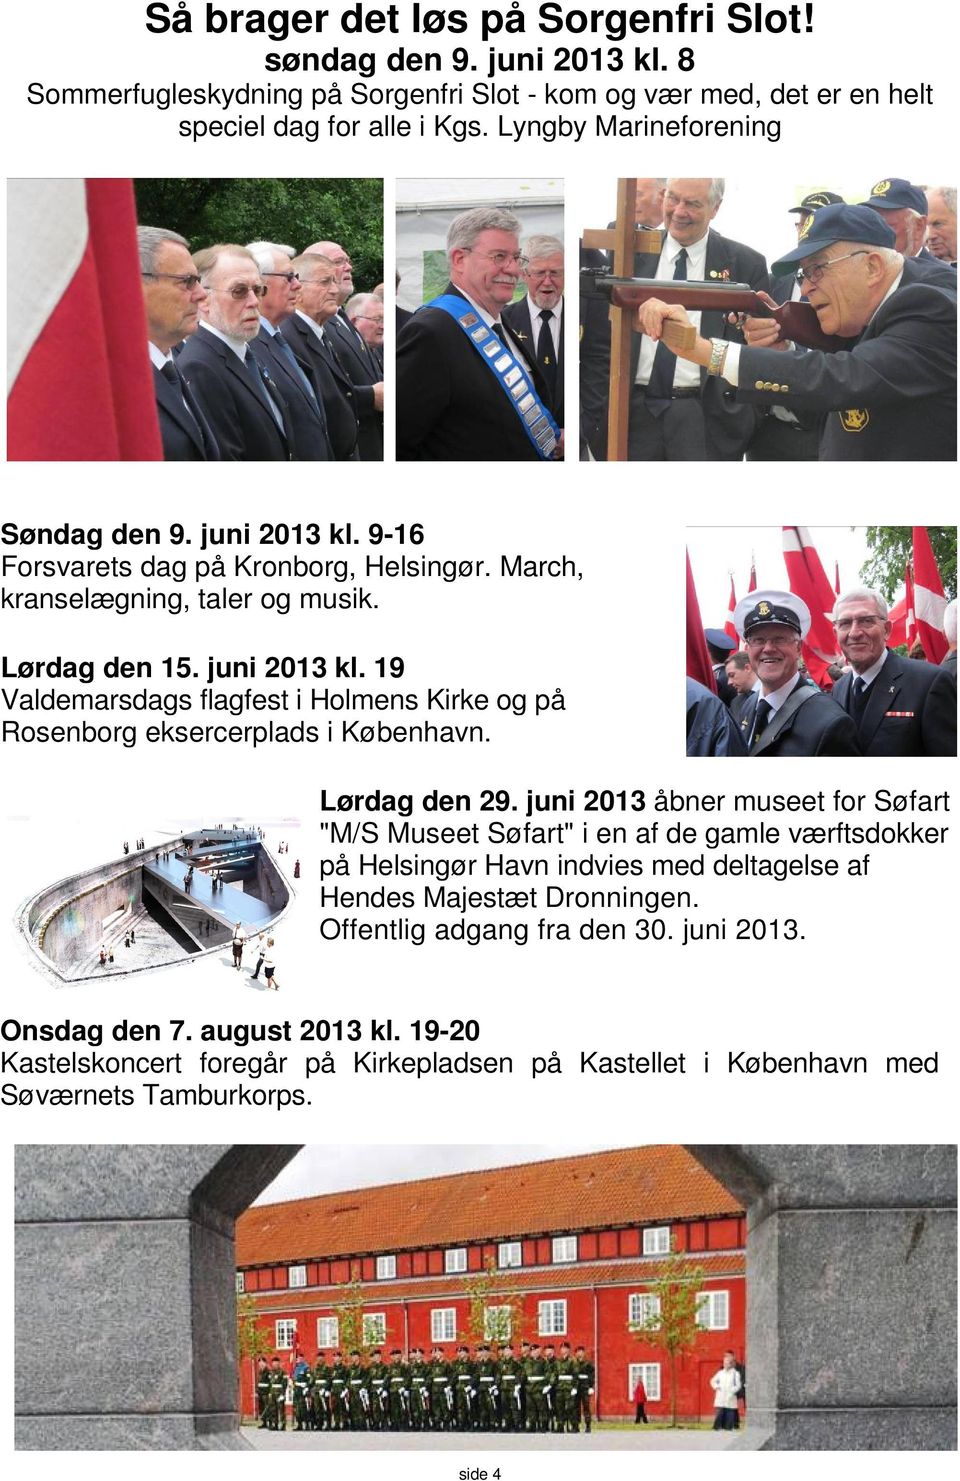 Lørdag den 29. juni 2013 åbner museet for Søfart "M/S Museet Søfart" i en af de gamle værftsdokker på Helsingør Havn indvies med deltagelse af Hendes Majestæt Dronningen.